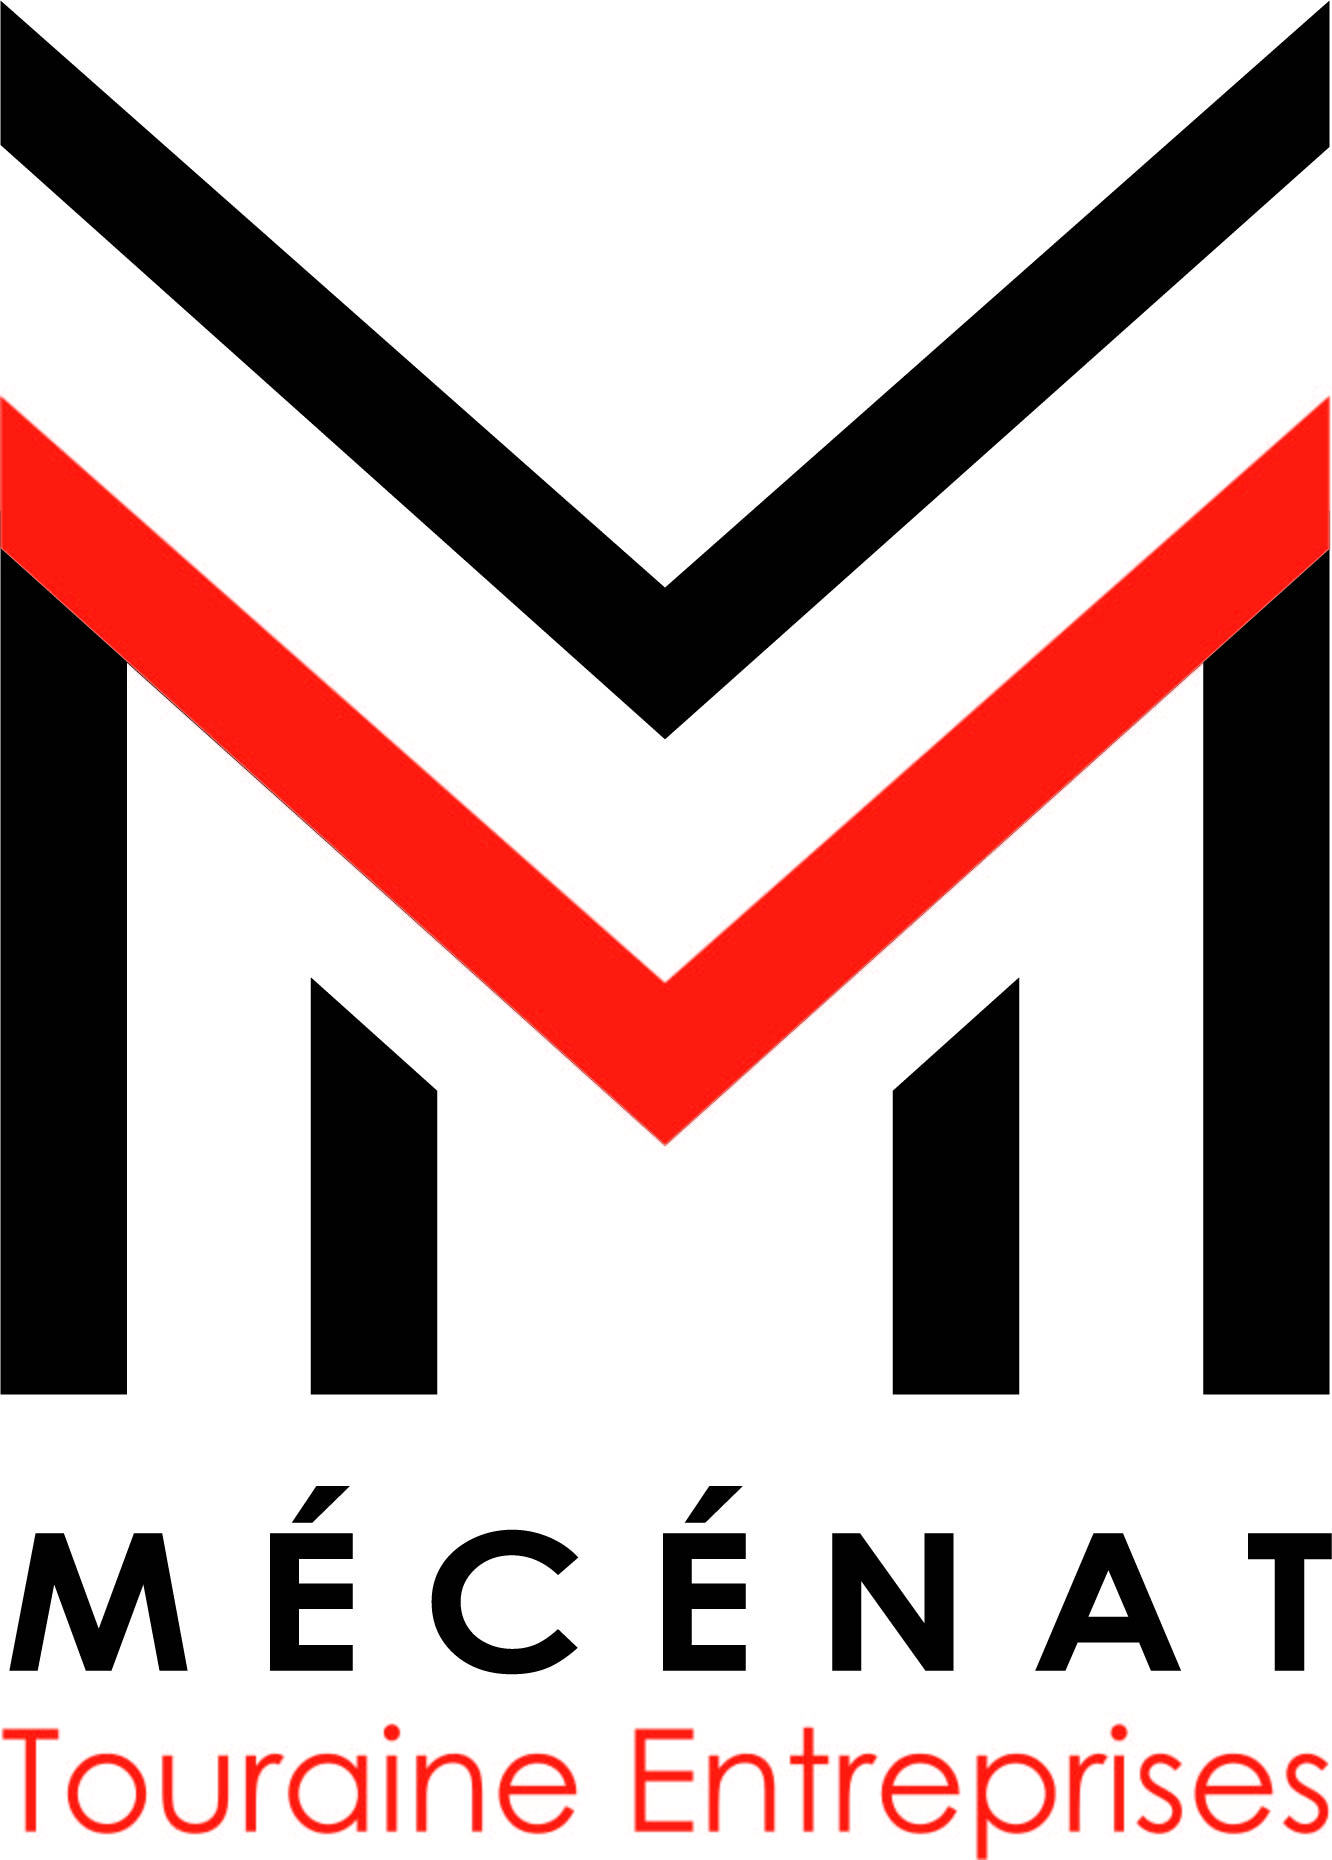 Logo MTE